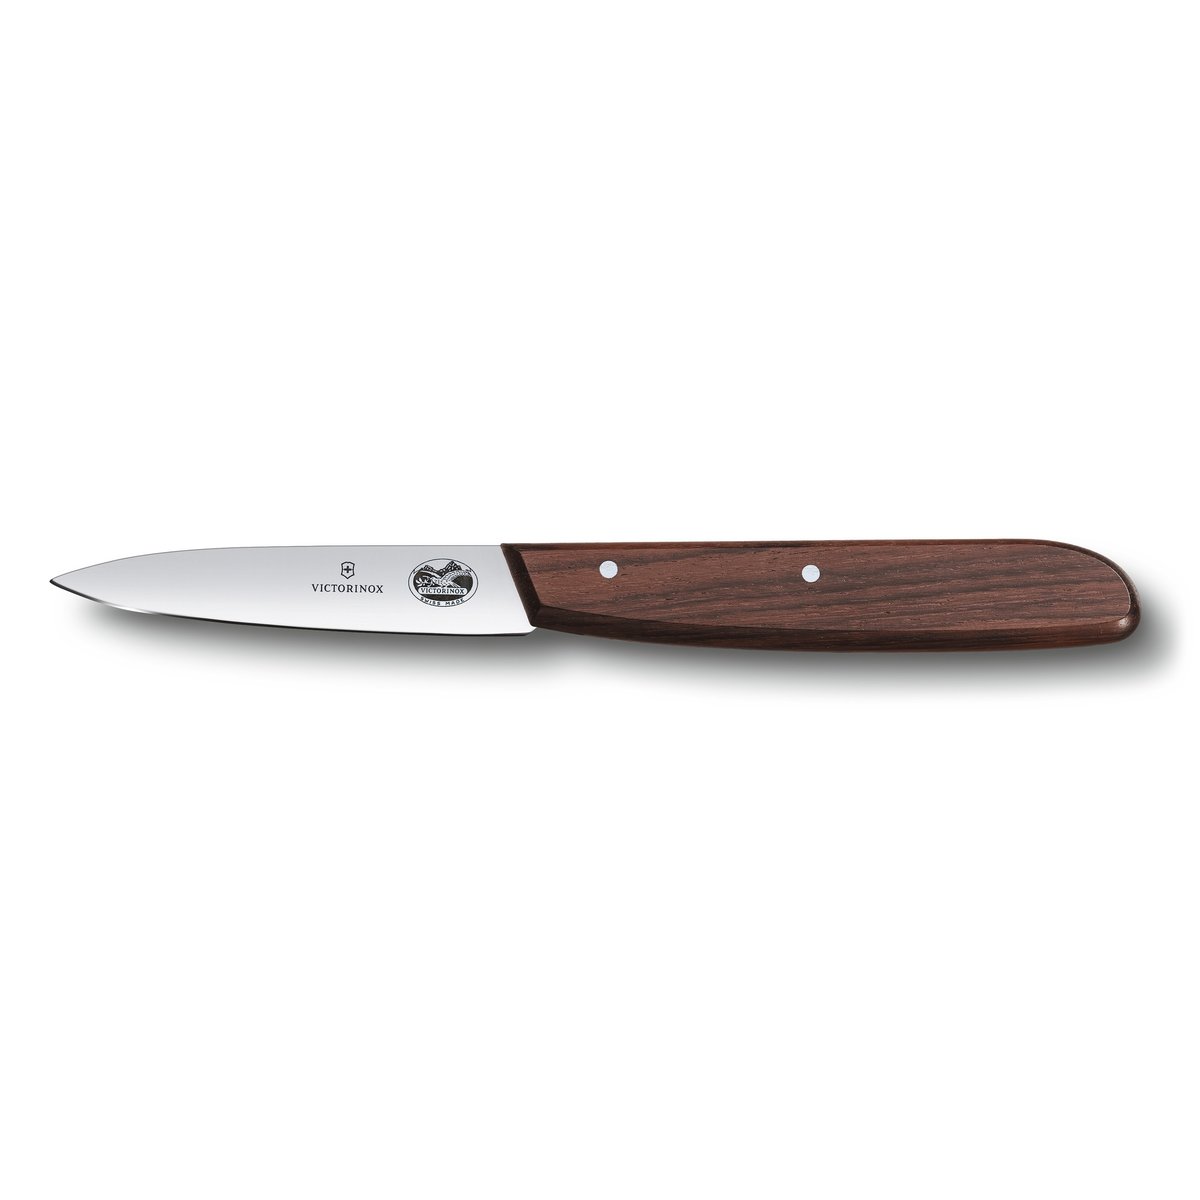 Victorinox Wood universalkniv tandet 8 cm Rustfrit stål/Ahorn